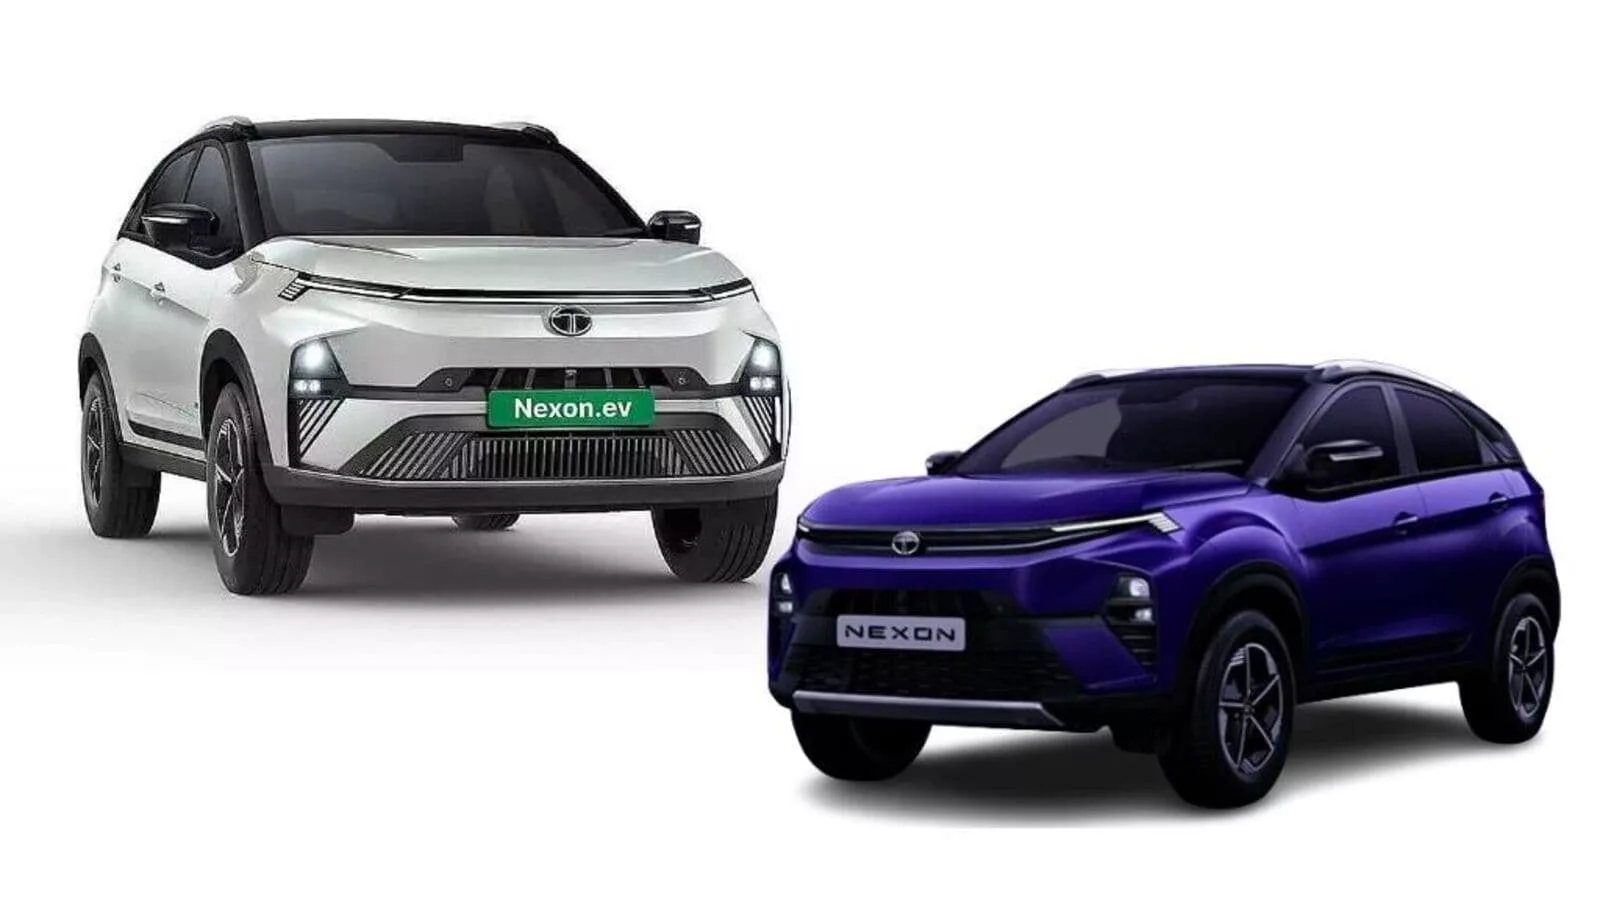 Tata Nexon vs Tata Nexon EV: Which SUV costs how much